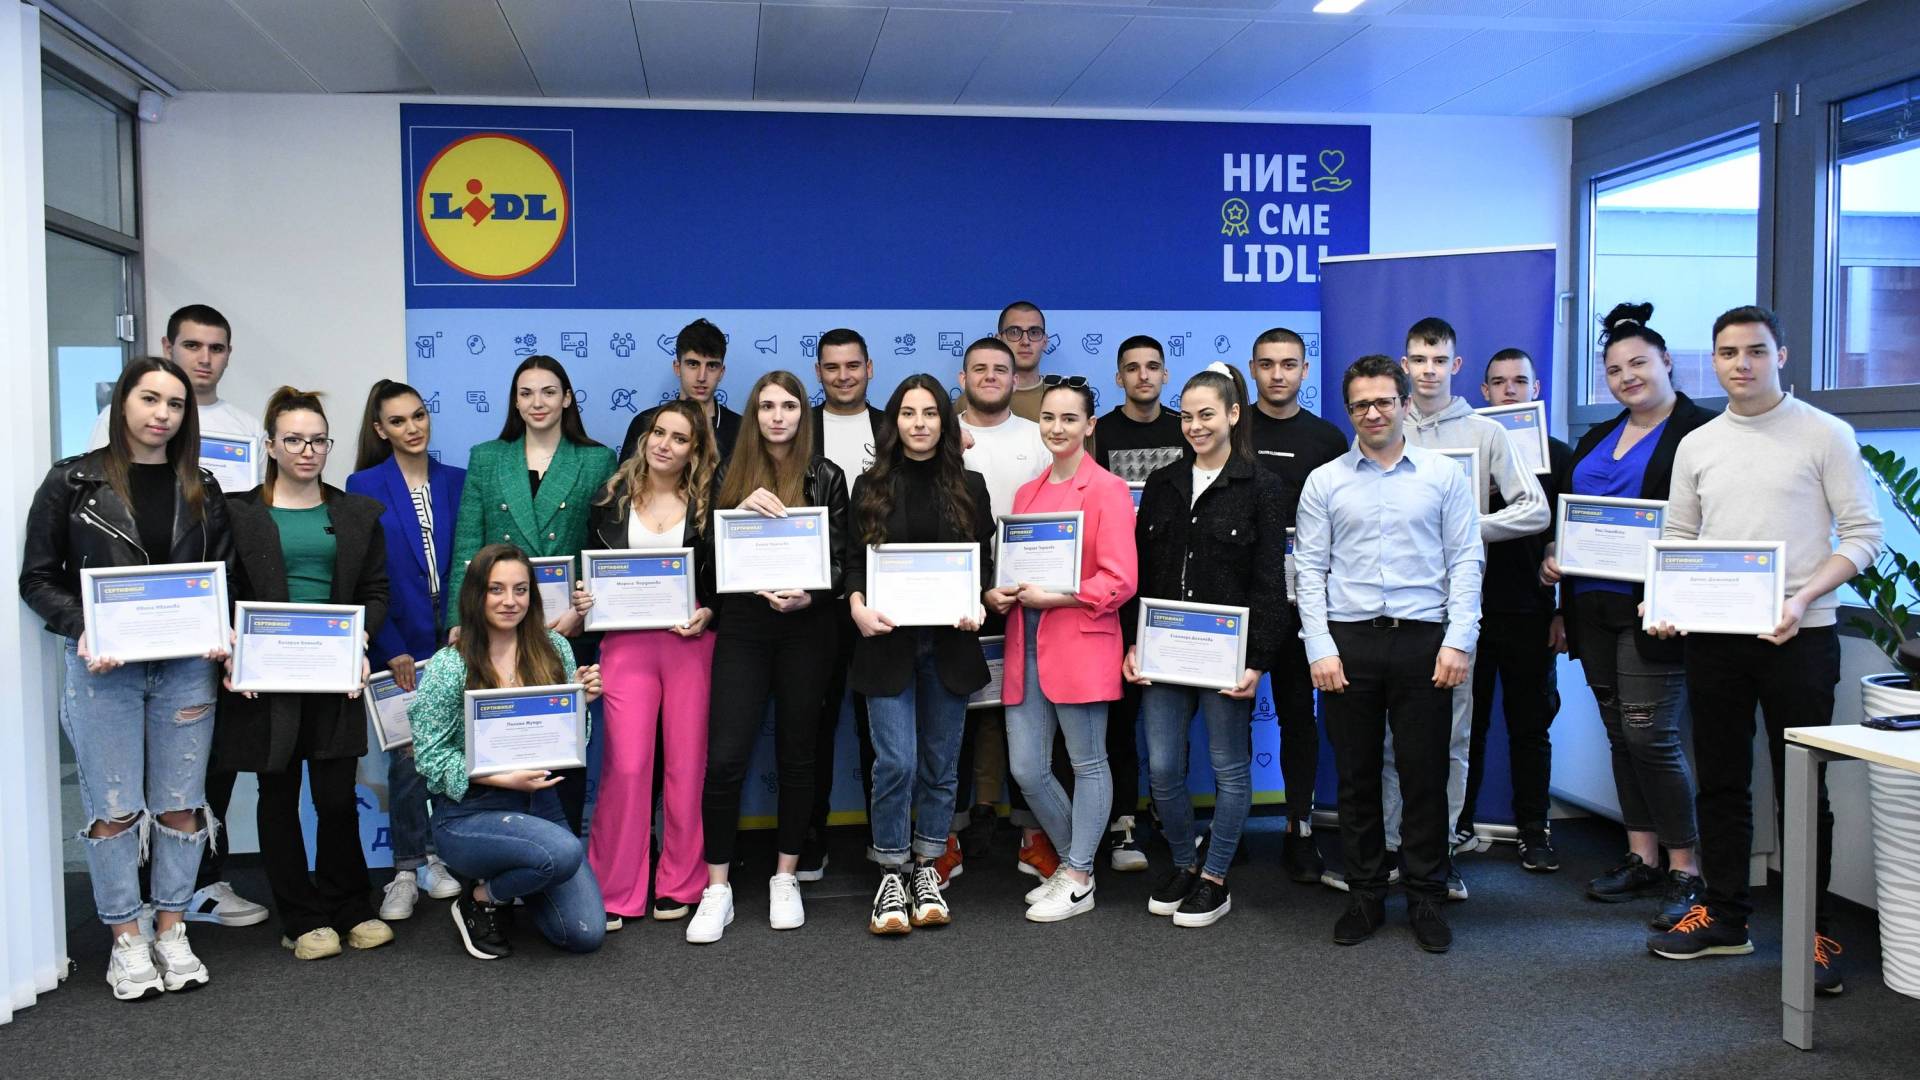 Четвърти випуск дуално обучение в Лидл България получава сертификатите си за завършено образование и придобита професия